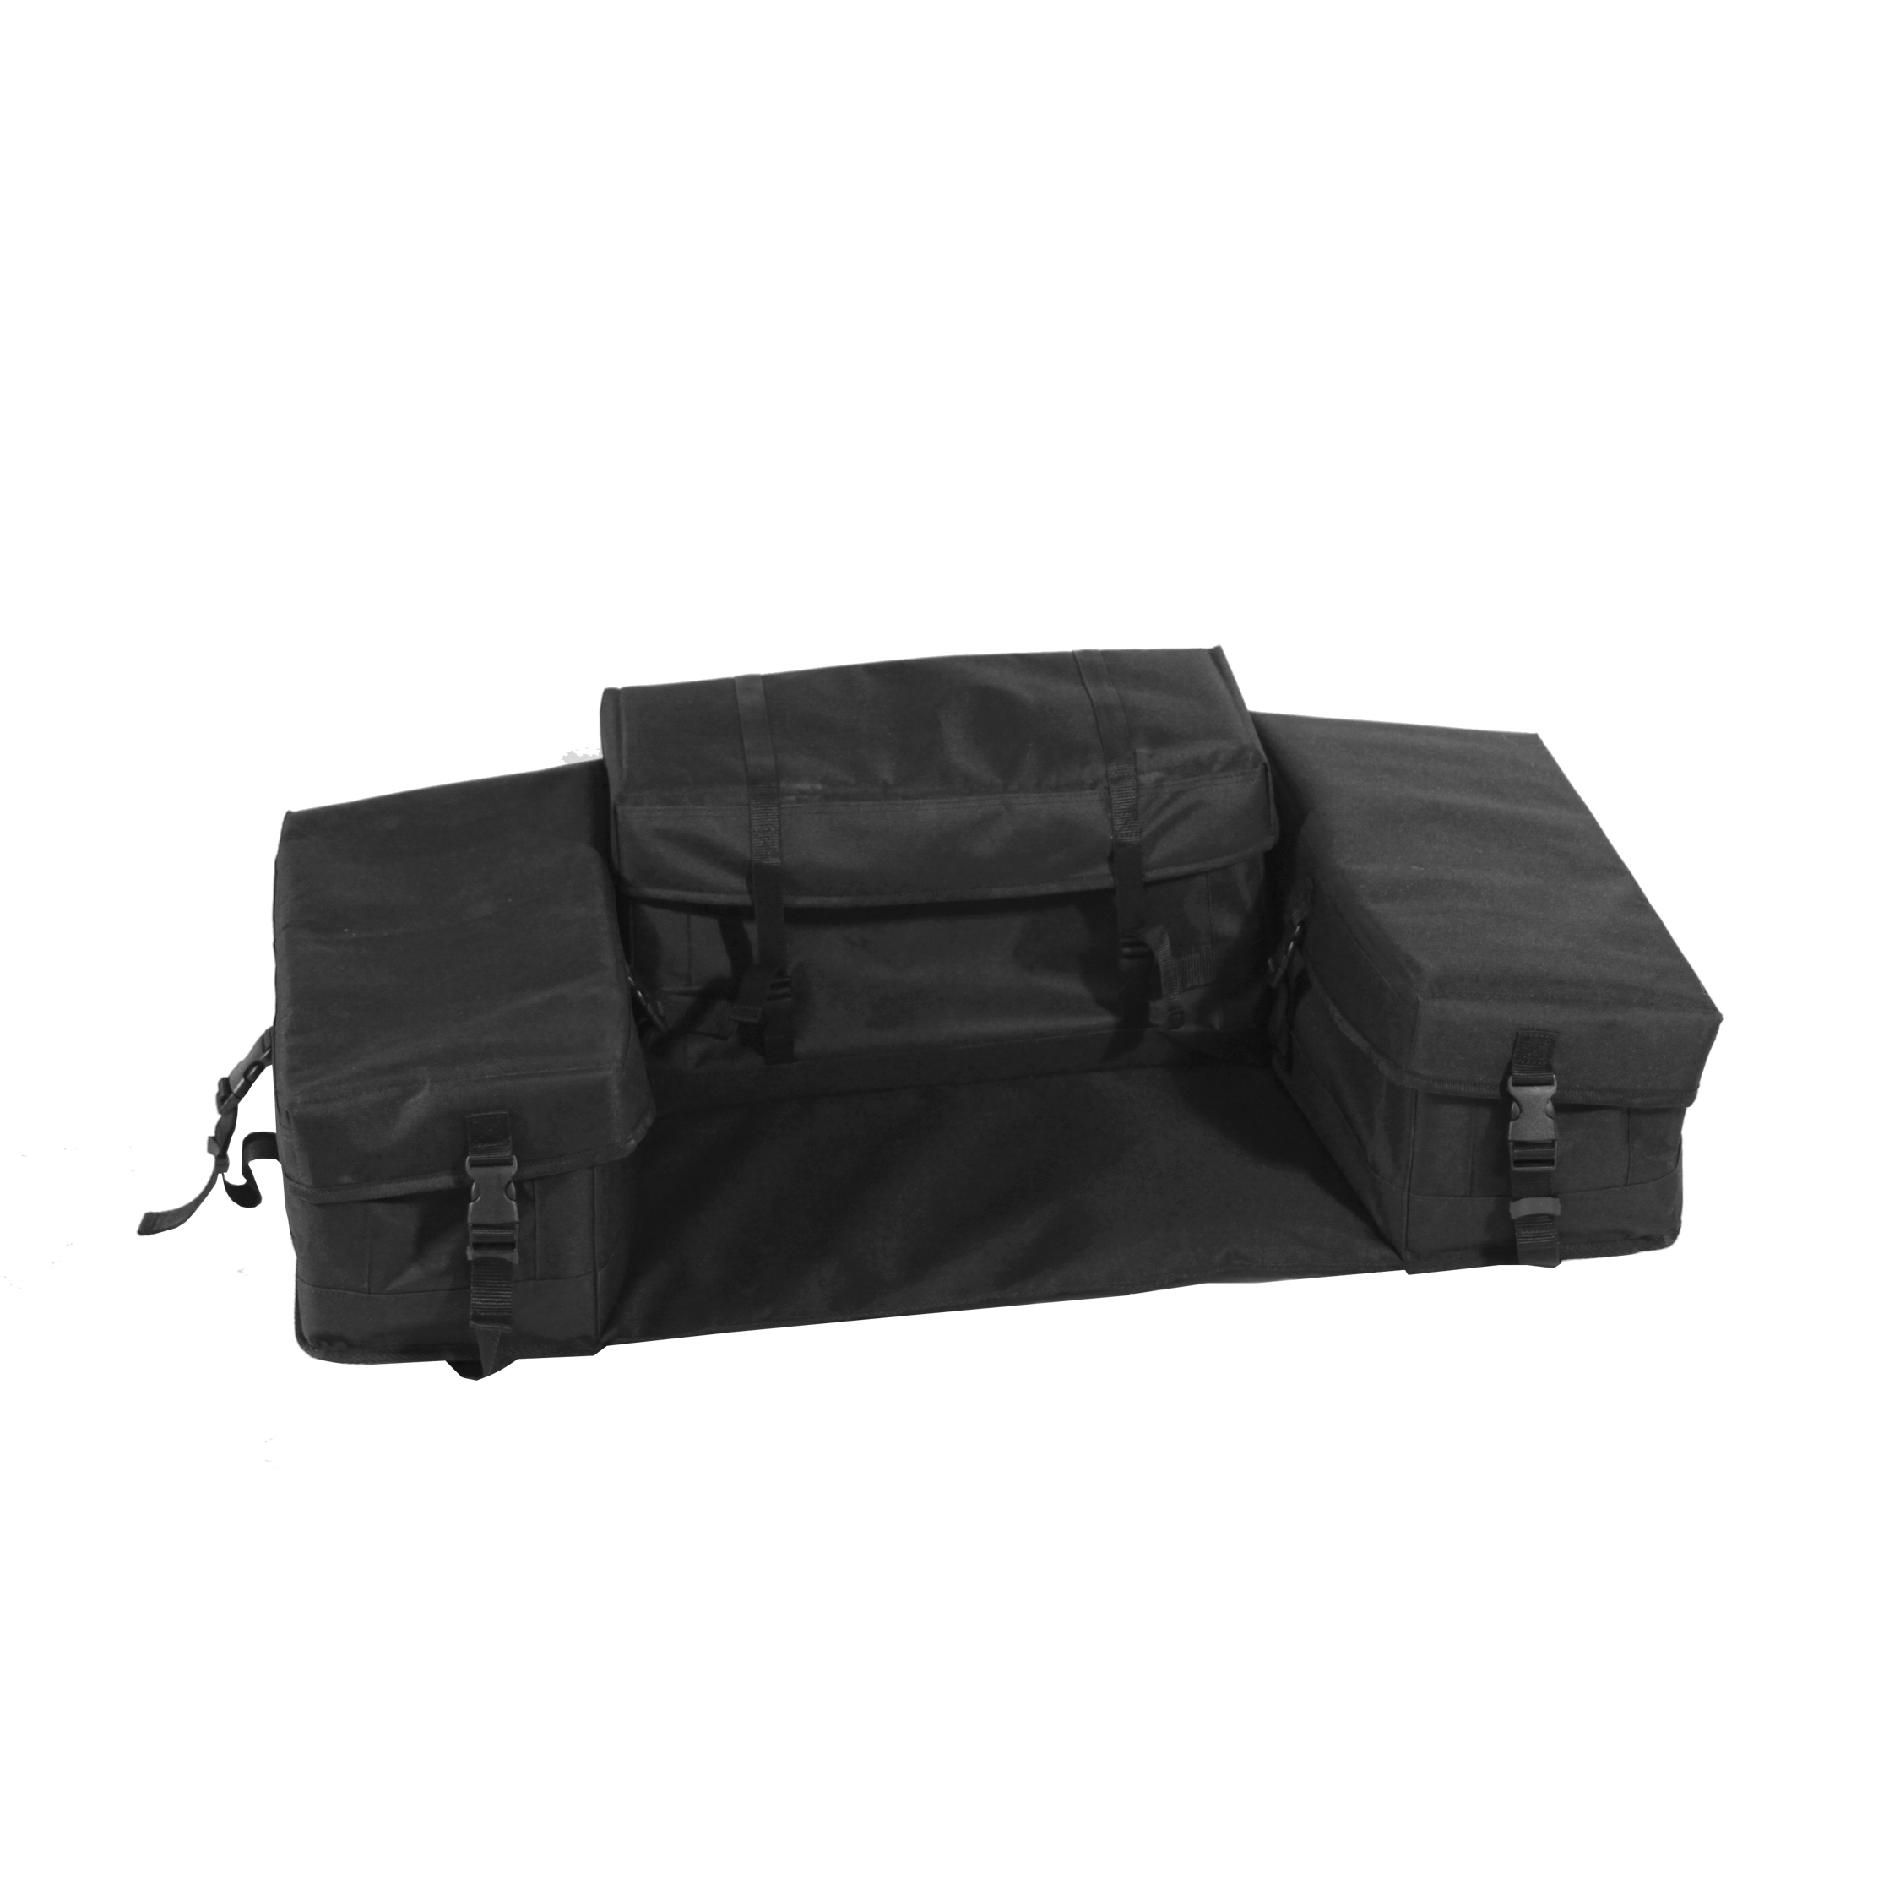 Kolpin 91191 Rear Seat Bag - Black